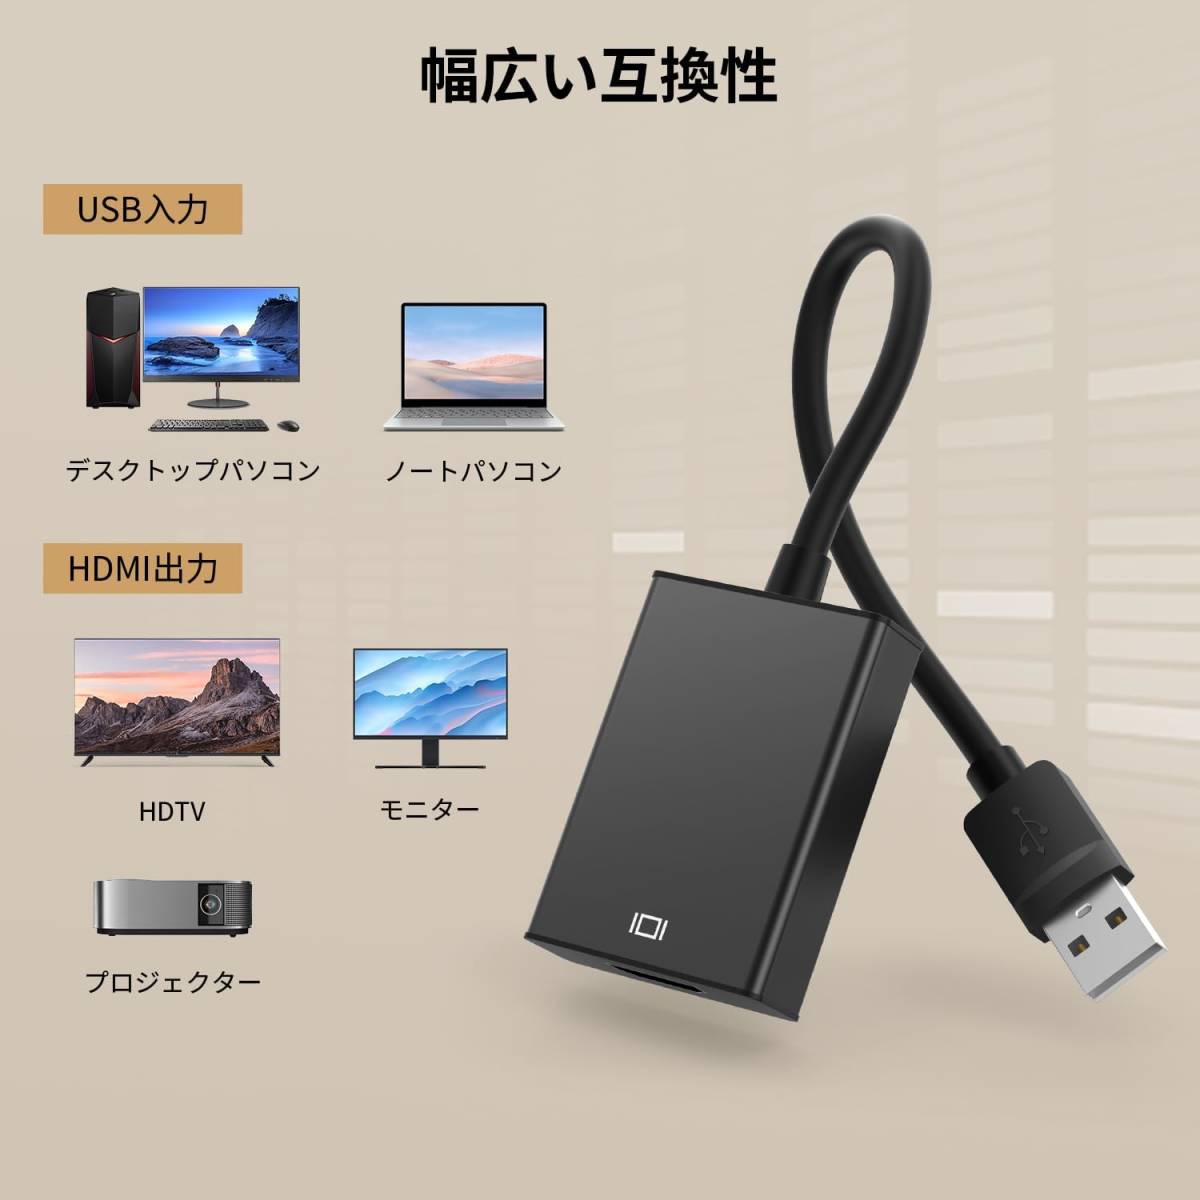 USB HDMI 変換アダプタ 「ドライバー内蔵」 usbディスプレイアダプタ 5Gbps高速 usb3.0 hdmi 変換 ケーブル 1080P ディスプレイアダプタ_画像7